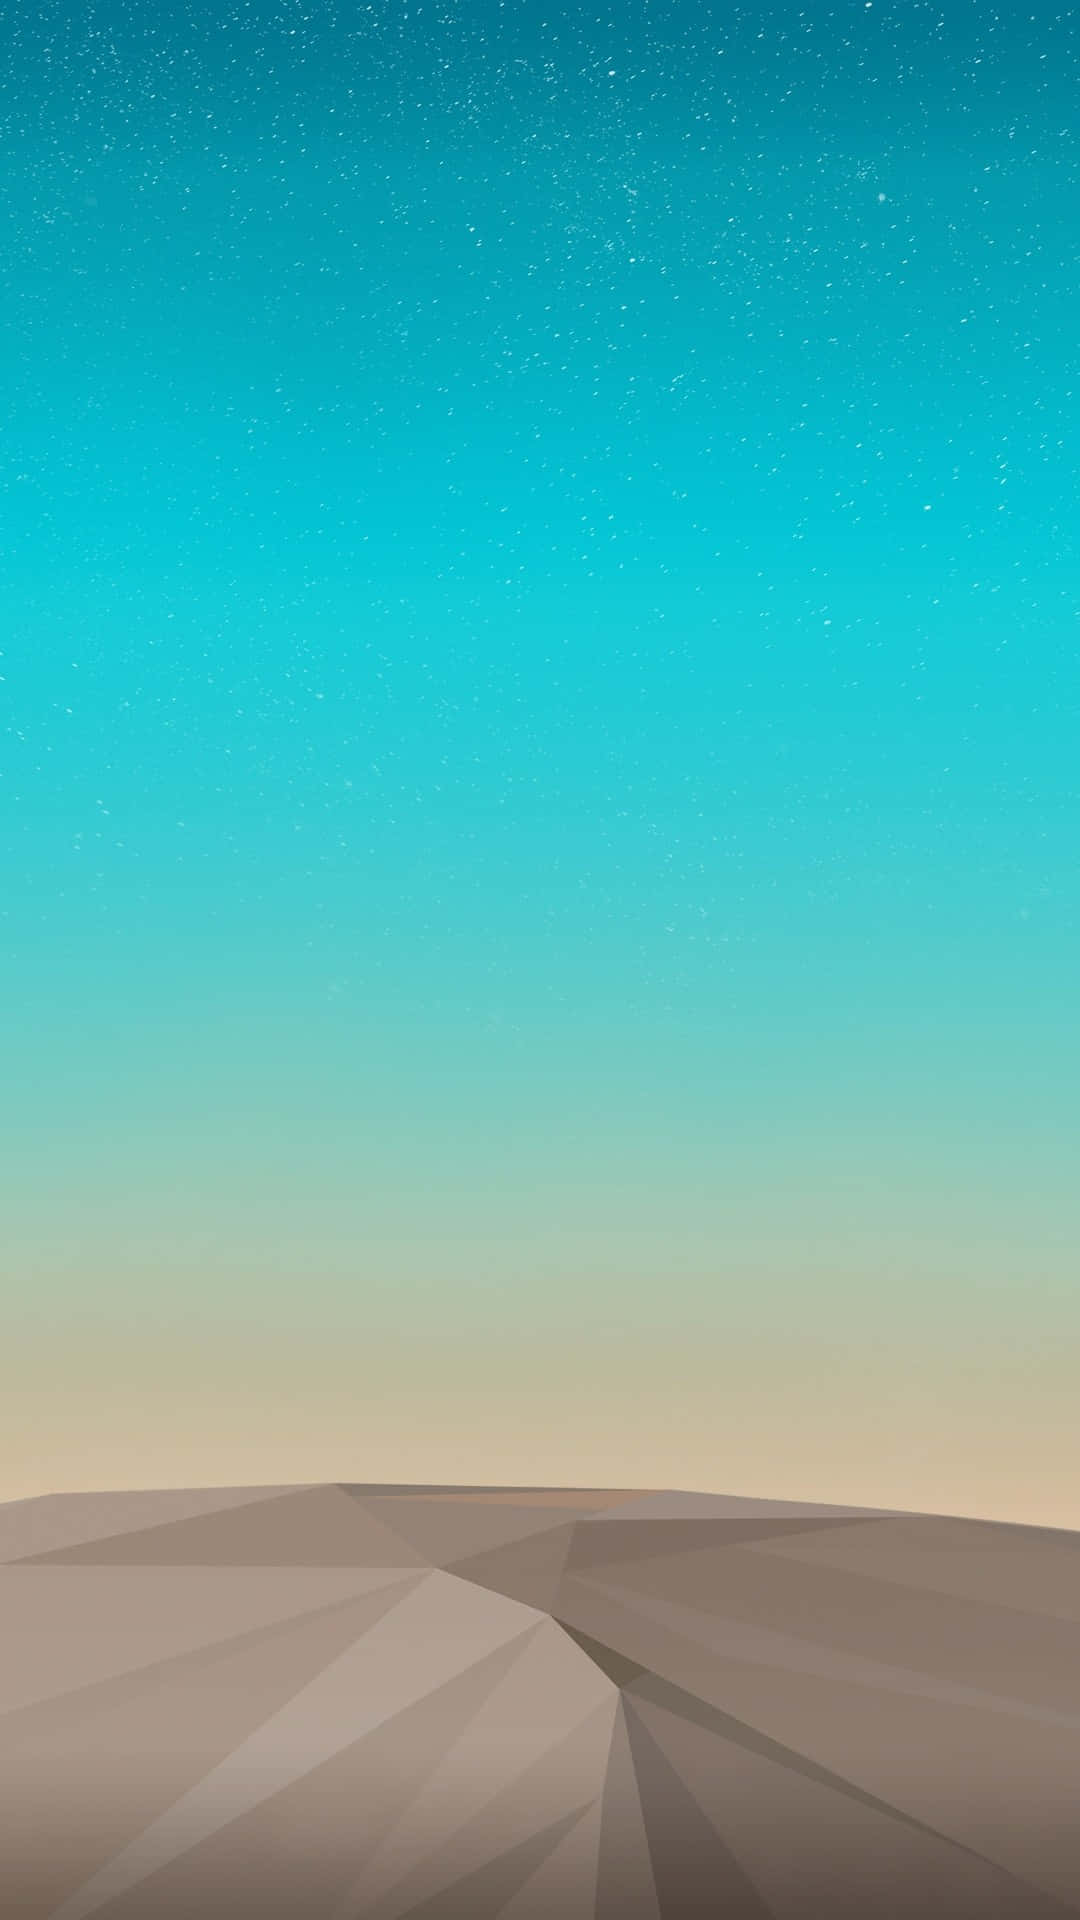 Standard Desert Vector Art Background